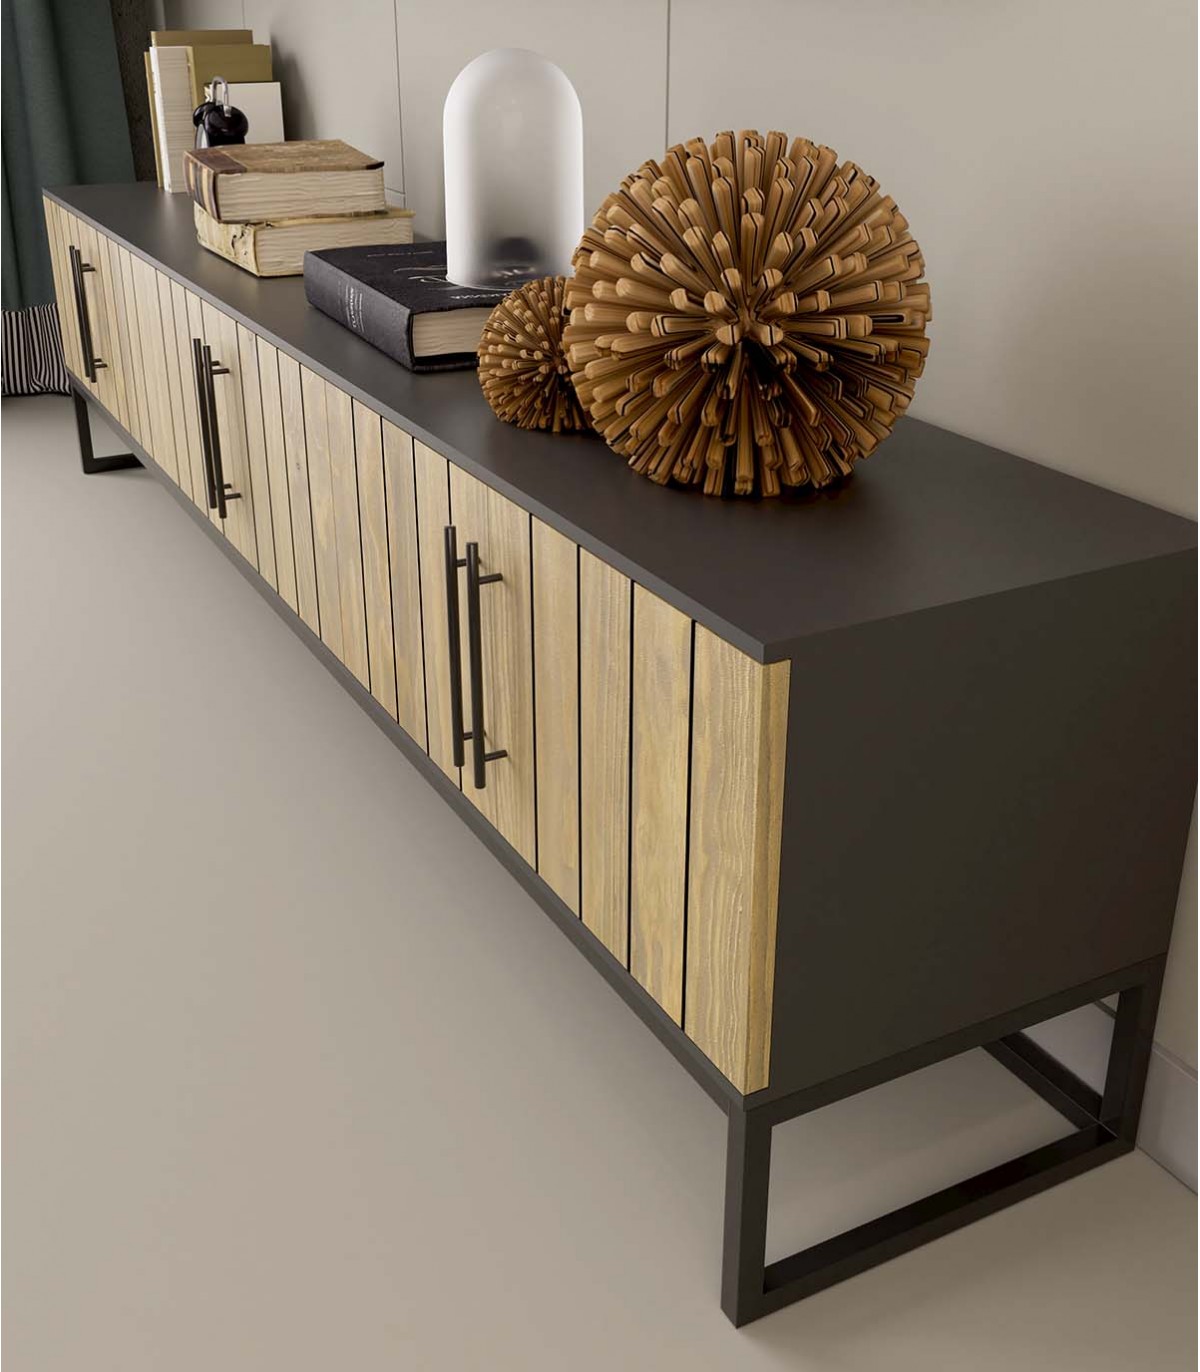 Mueble TV bajo para salón en madera de diseño sostenible